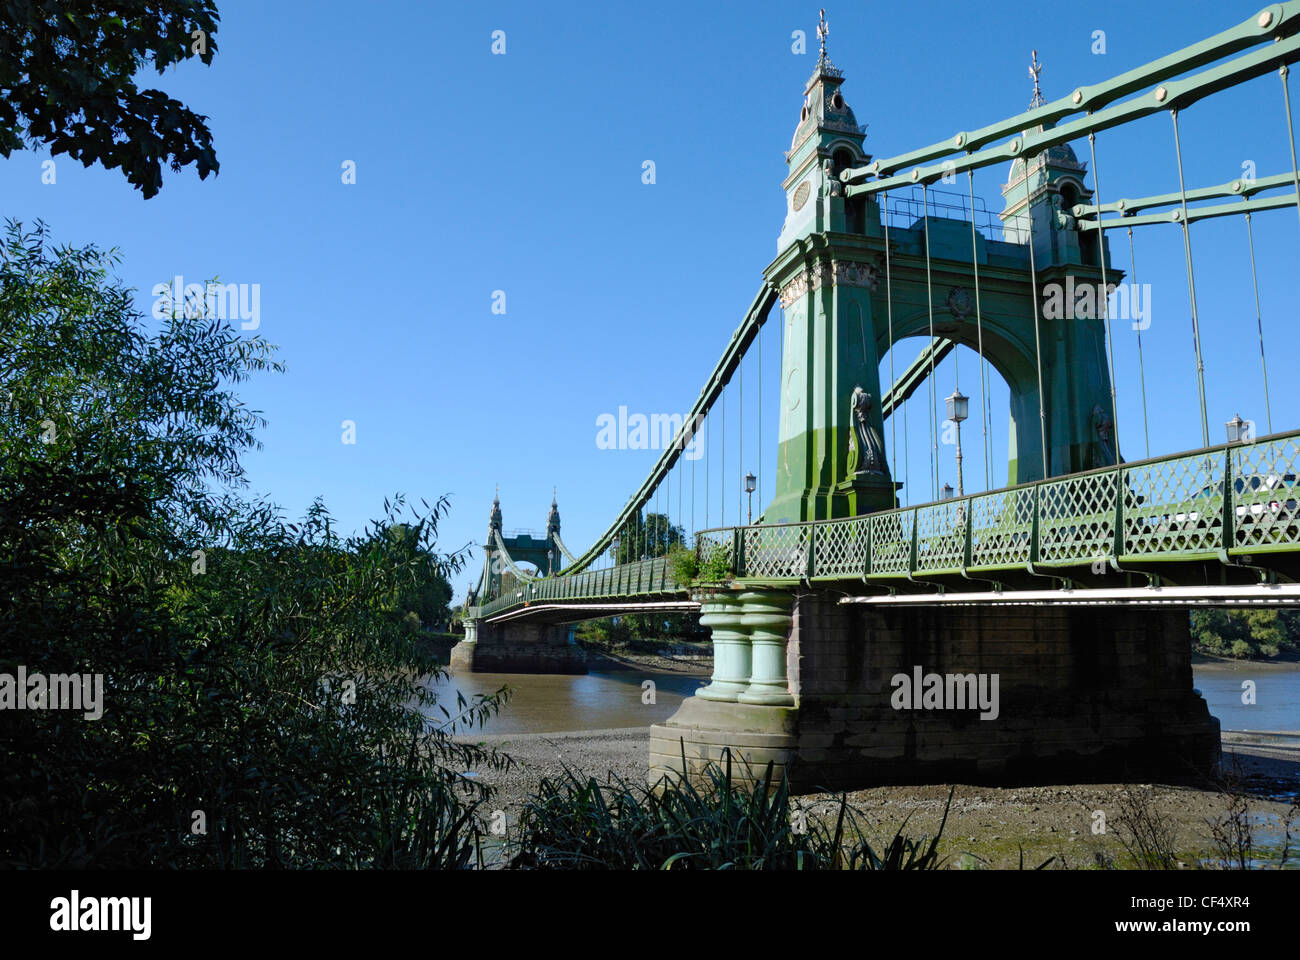 Hammersmith Bridge, erbaut 1887, über die Themse, die Verknüpfung von Barnes auf der Südseite, Hammersmith auf der Nordseite. Stockfoto